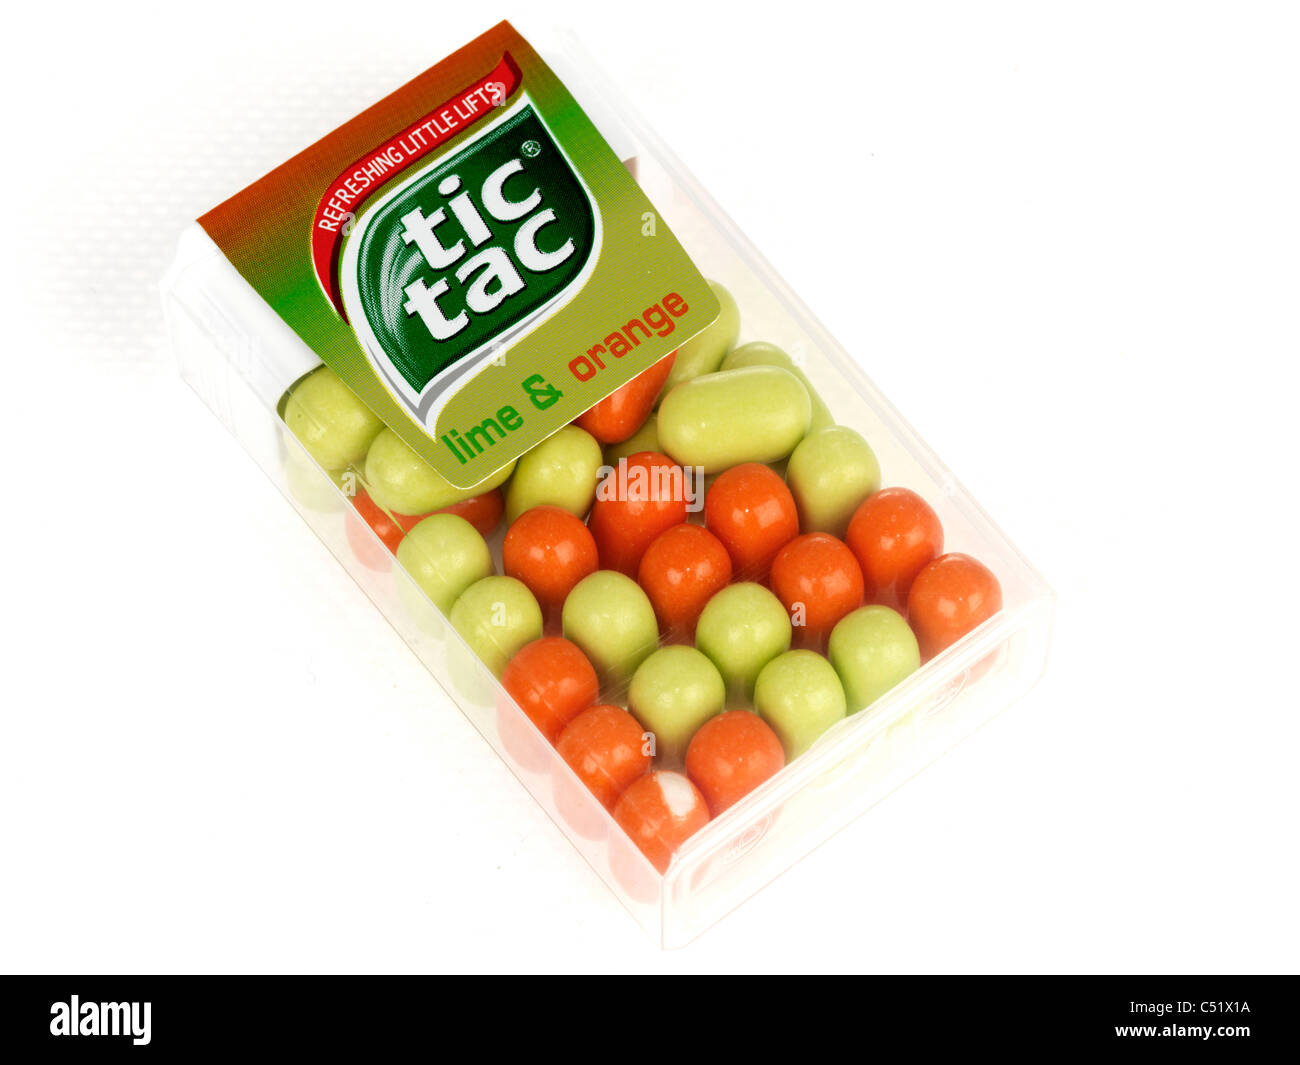 Tic Tac citron vert et orange 100